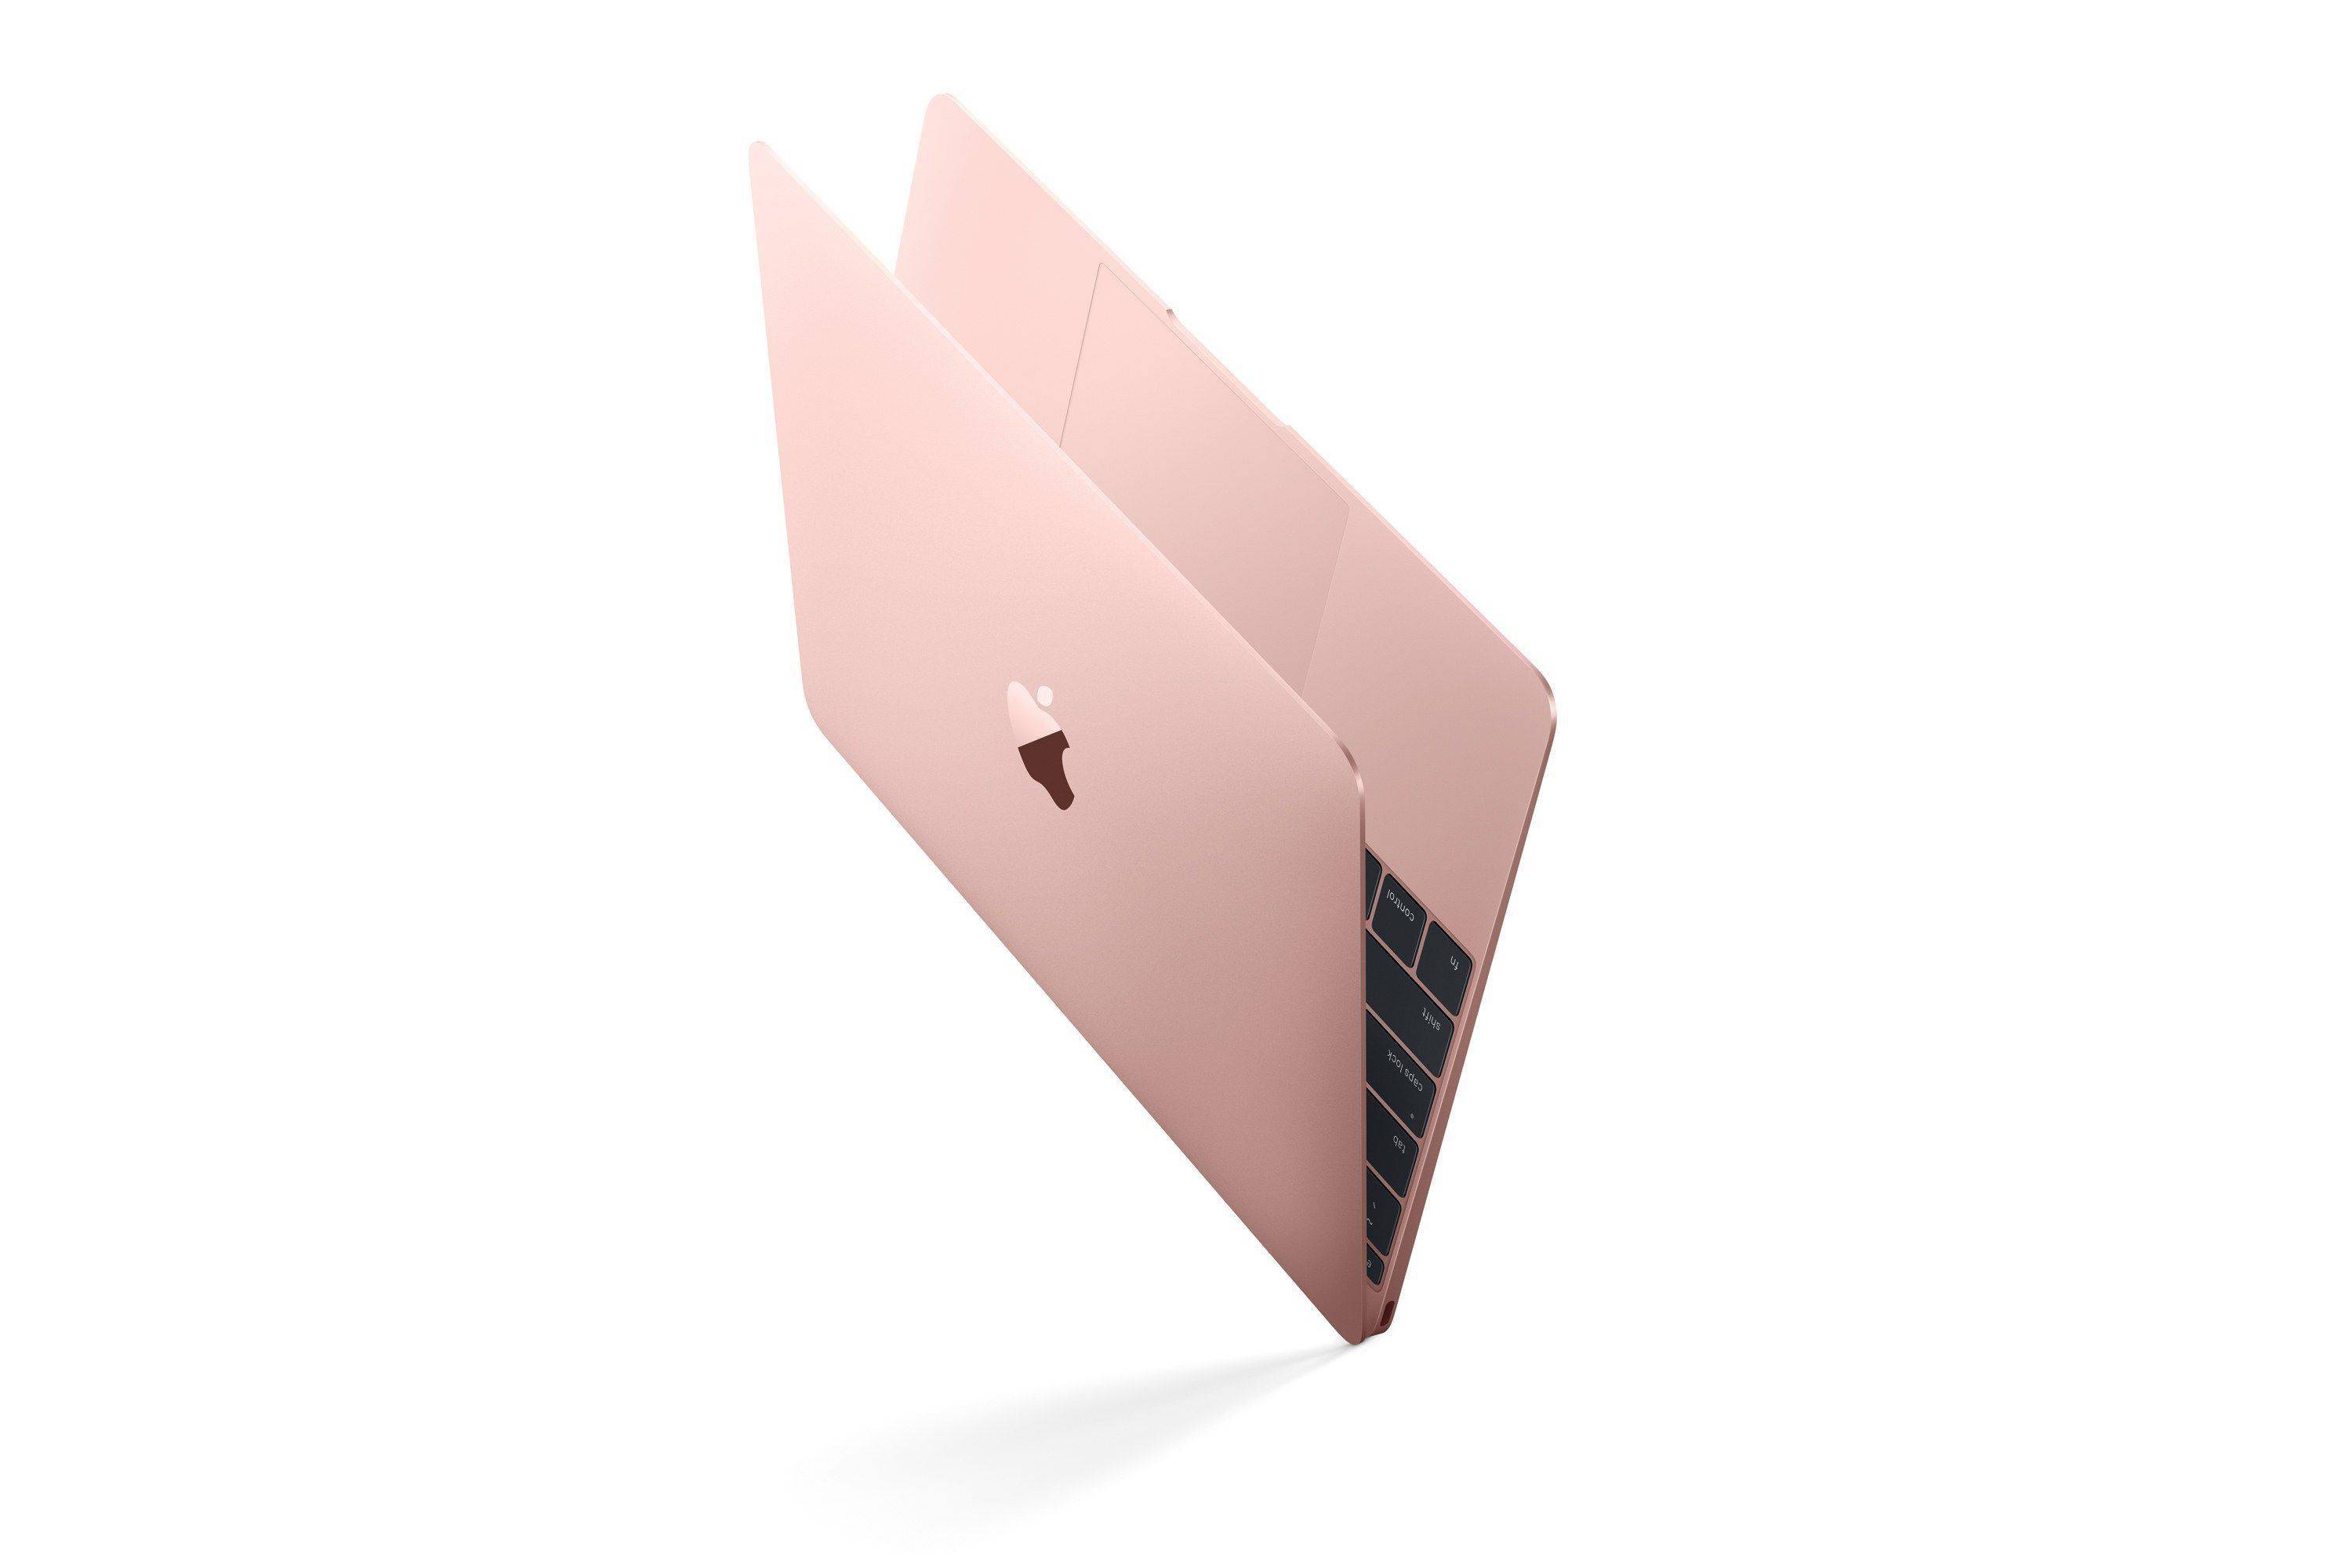 12英寸macbook复活!最便宜的苹果笔记本电脑?